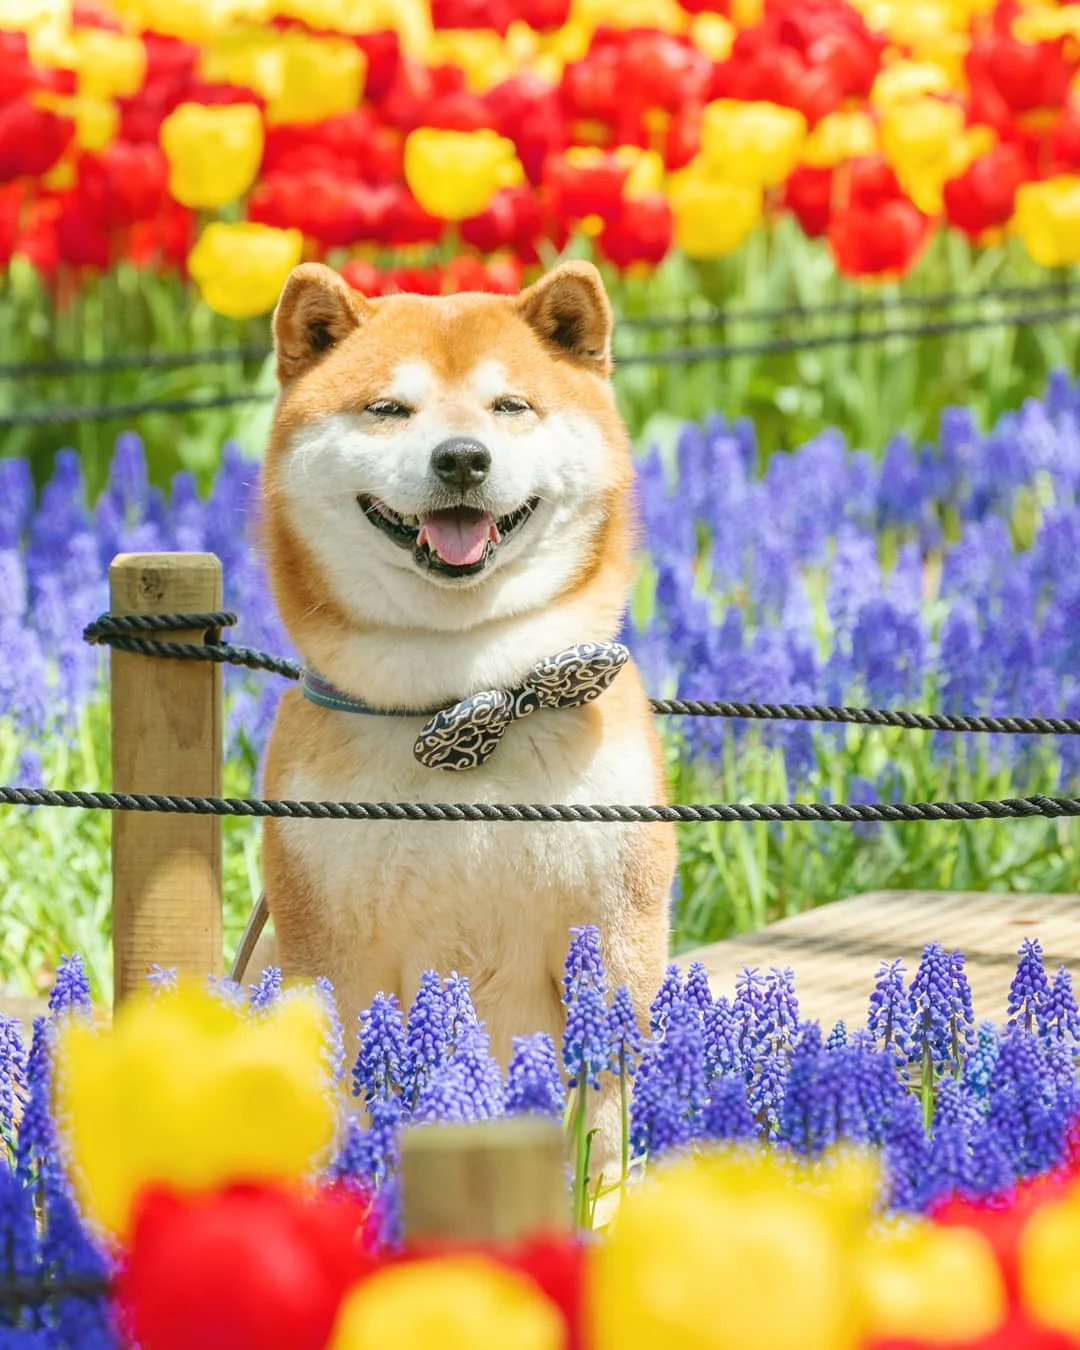 Фото этого улыбающегося пса на фоне цветов делают людей счастливыми, и это правда работает - фото 433972